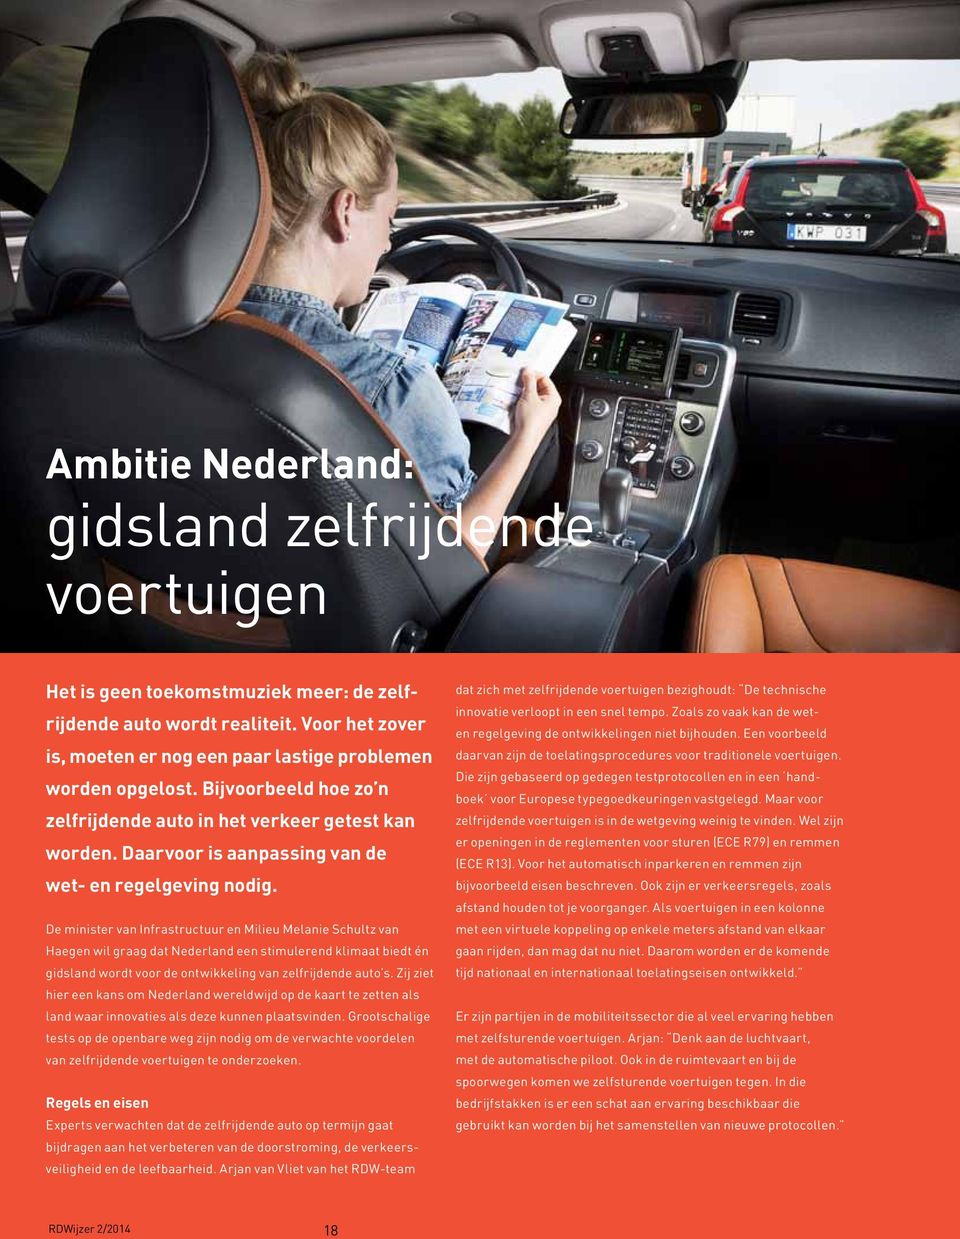 De minister van Infrastructuur en Milieu Melanie Schultz van Haegen wil graag dat Nederland een stimulerend klimaat biedt én gidsland wordt voor de ontwikkeling van zelfrijdende auto s.